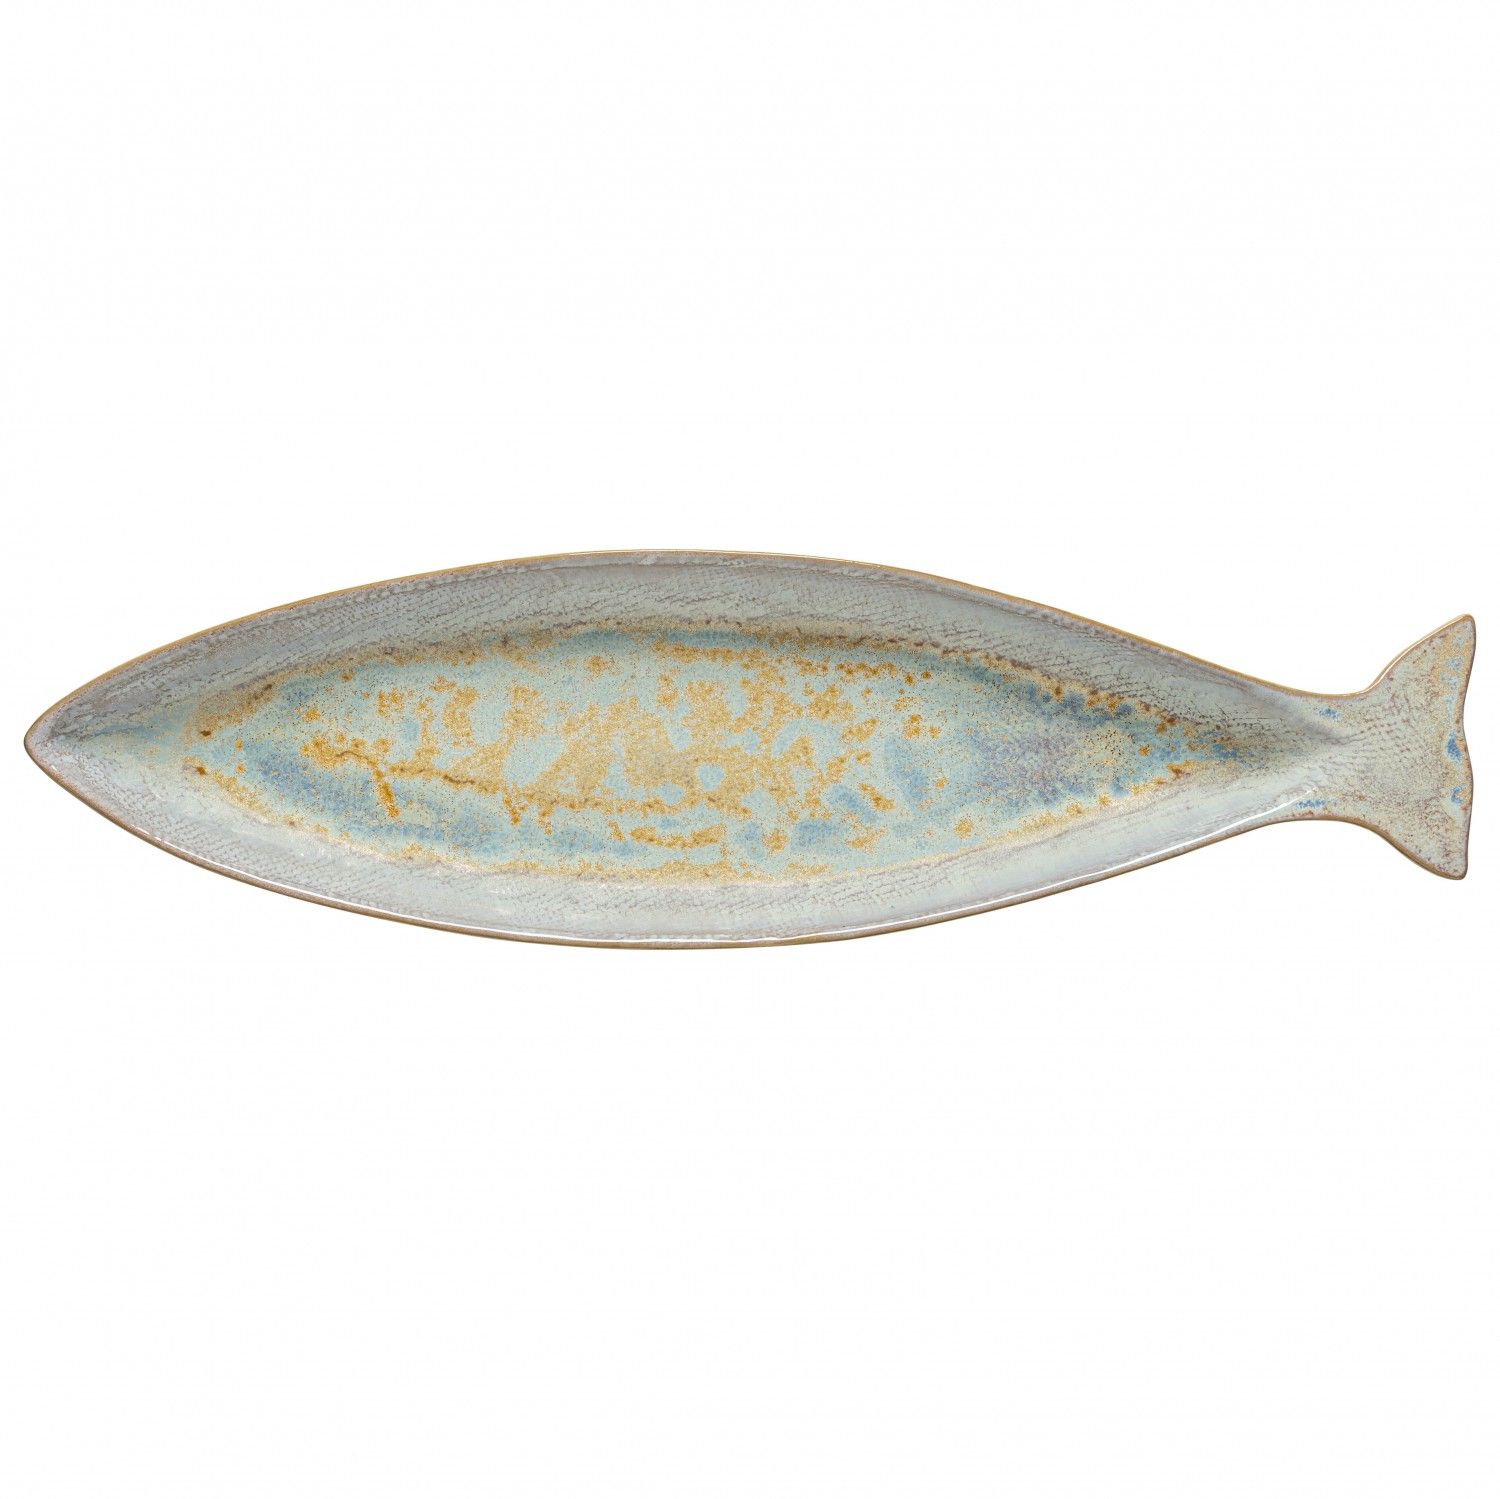 Mackerel Fish Platter